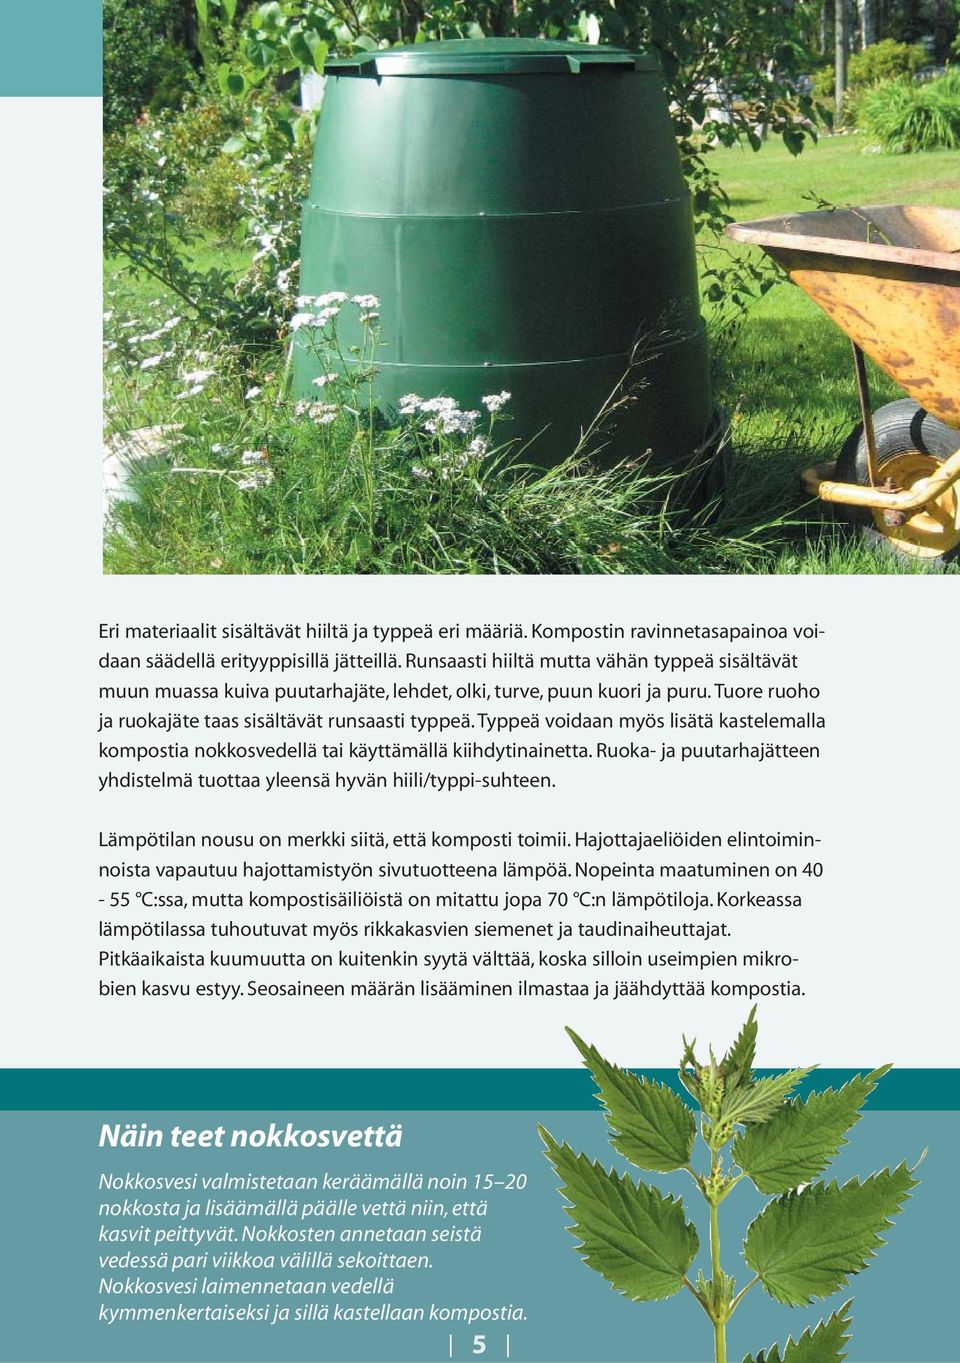 Typpeä voidaan myös lisätä kastelemalla kompostia nokkosvedellä tai käyttämällä kiihdytinainetta. Ruoka- ja puutarhajätteen yhdistelmä tuottaa yleensä hyvän hiili/typpi-suhteen.